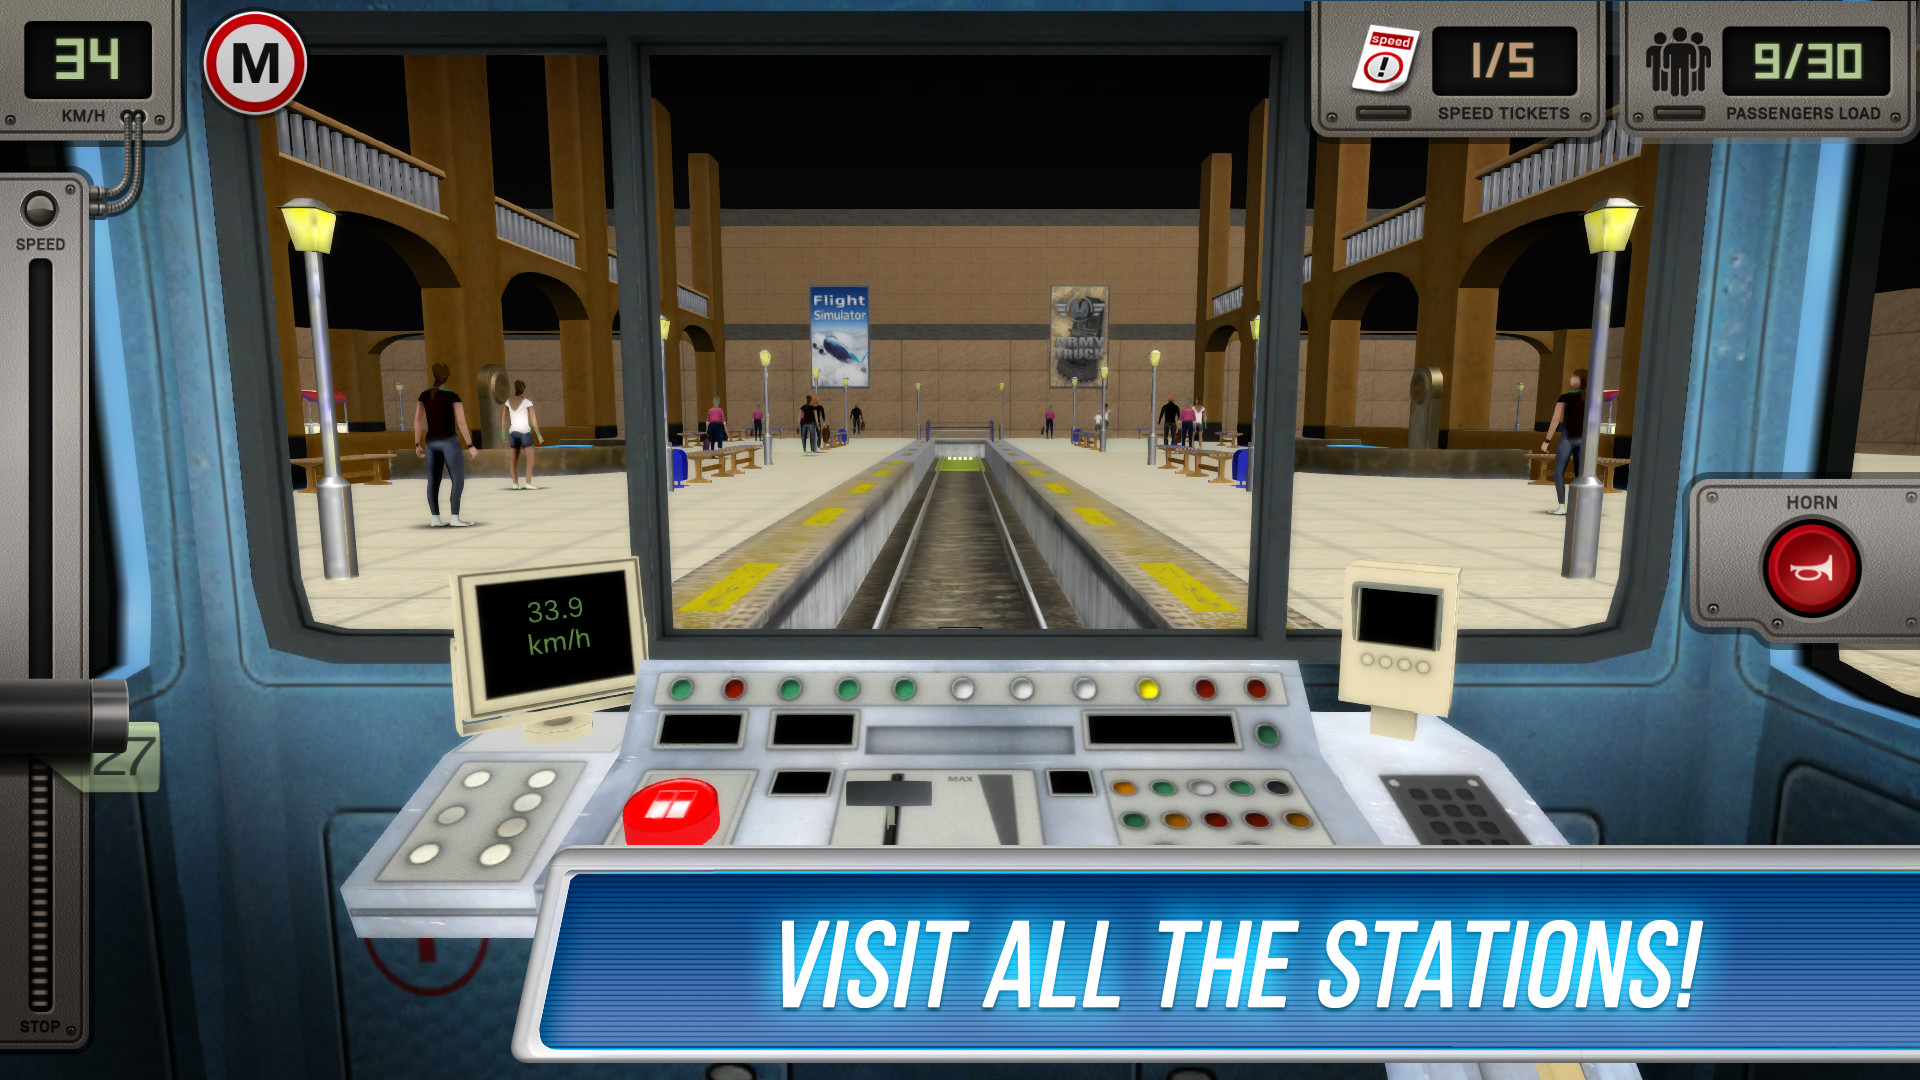 Поиграть в игру станцию метро. Сабвей симулятор 3д метро. Симулятор метро ps4. Русич Subway Simulator 3d. Метро симулятор 3д - поезда.